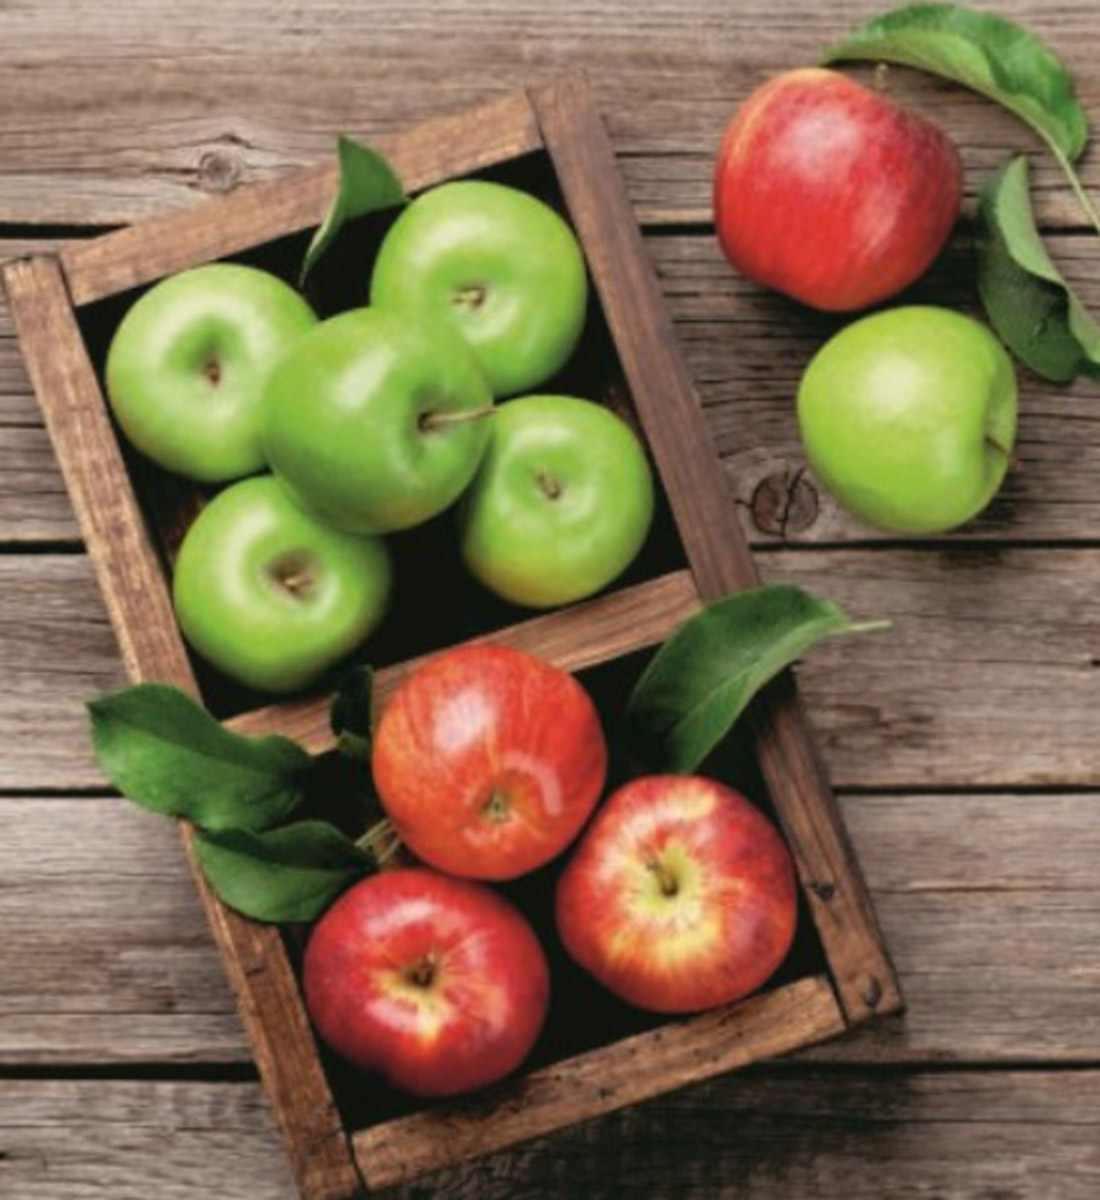 τα πράσινα μήλα βοηθούν στην απώλεια βάρους)